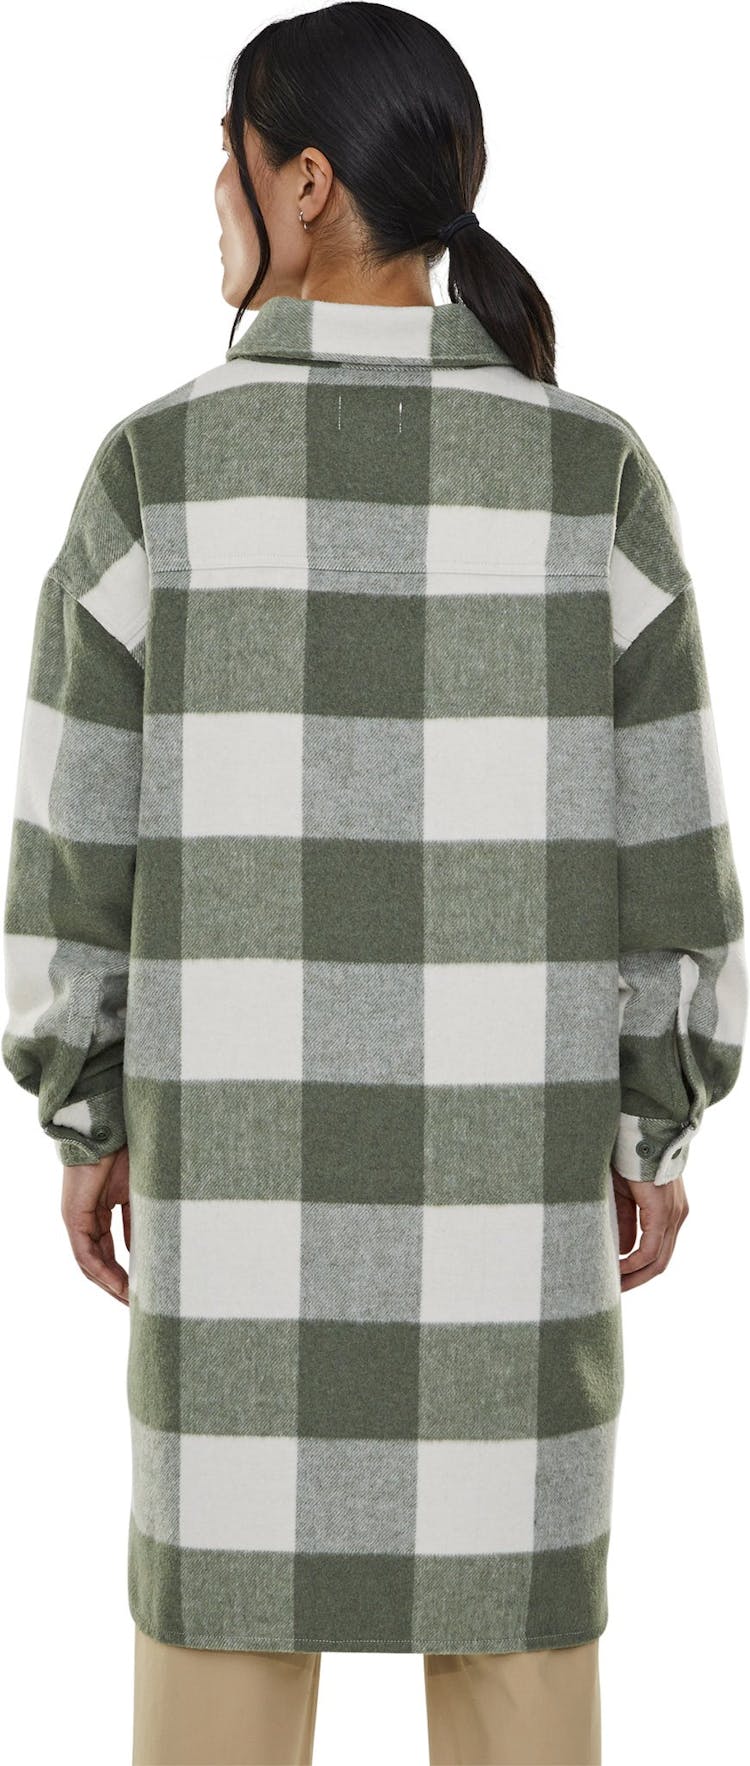 Numéro de l'image de la galerie de produits 3 pour le produit Veste-chemise longue Bellingham - Femme